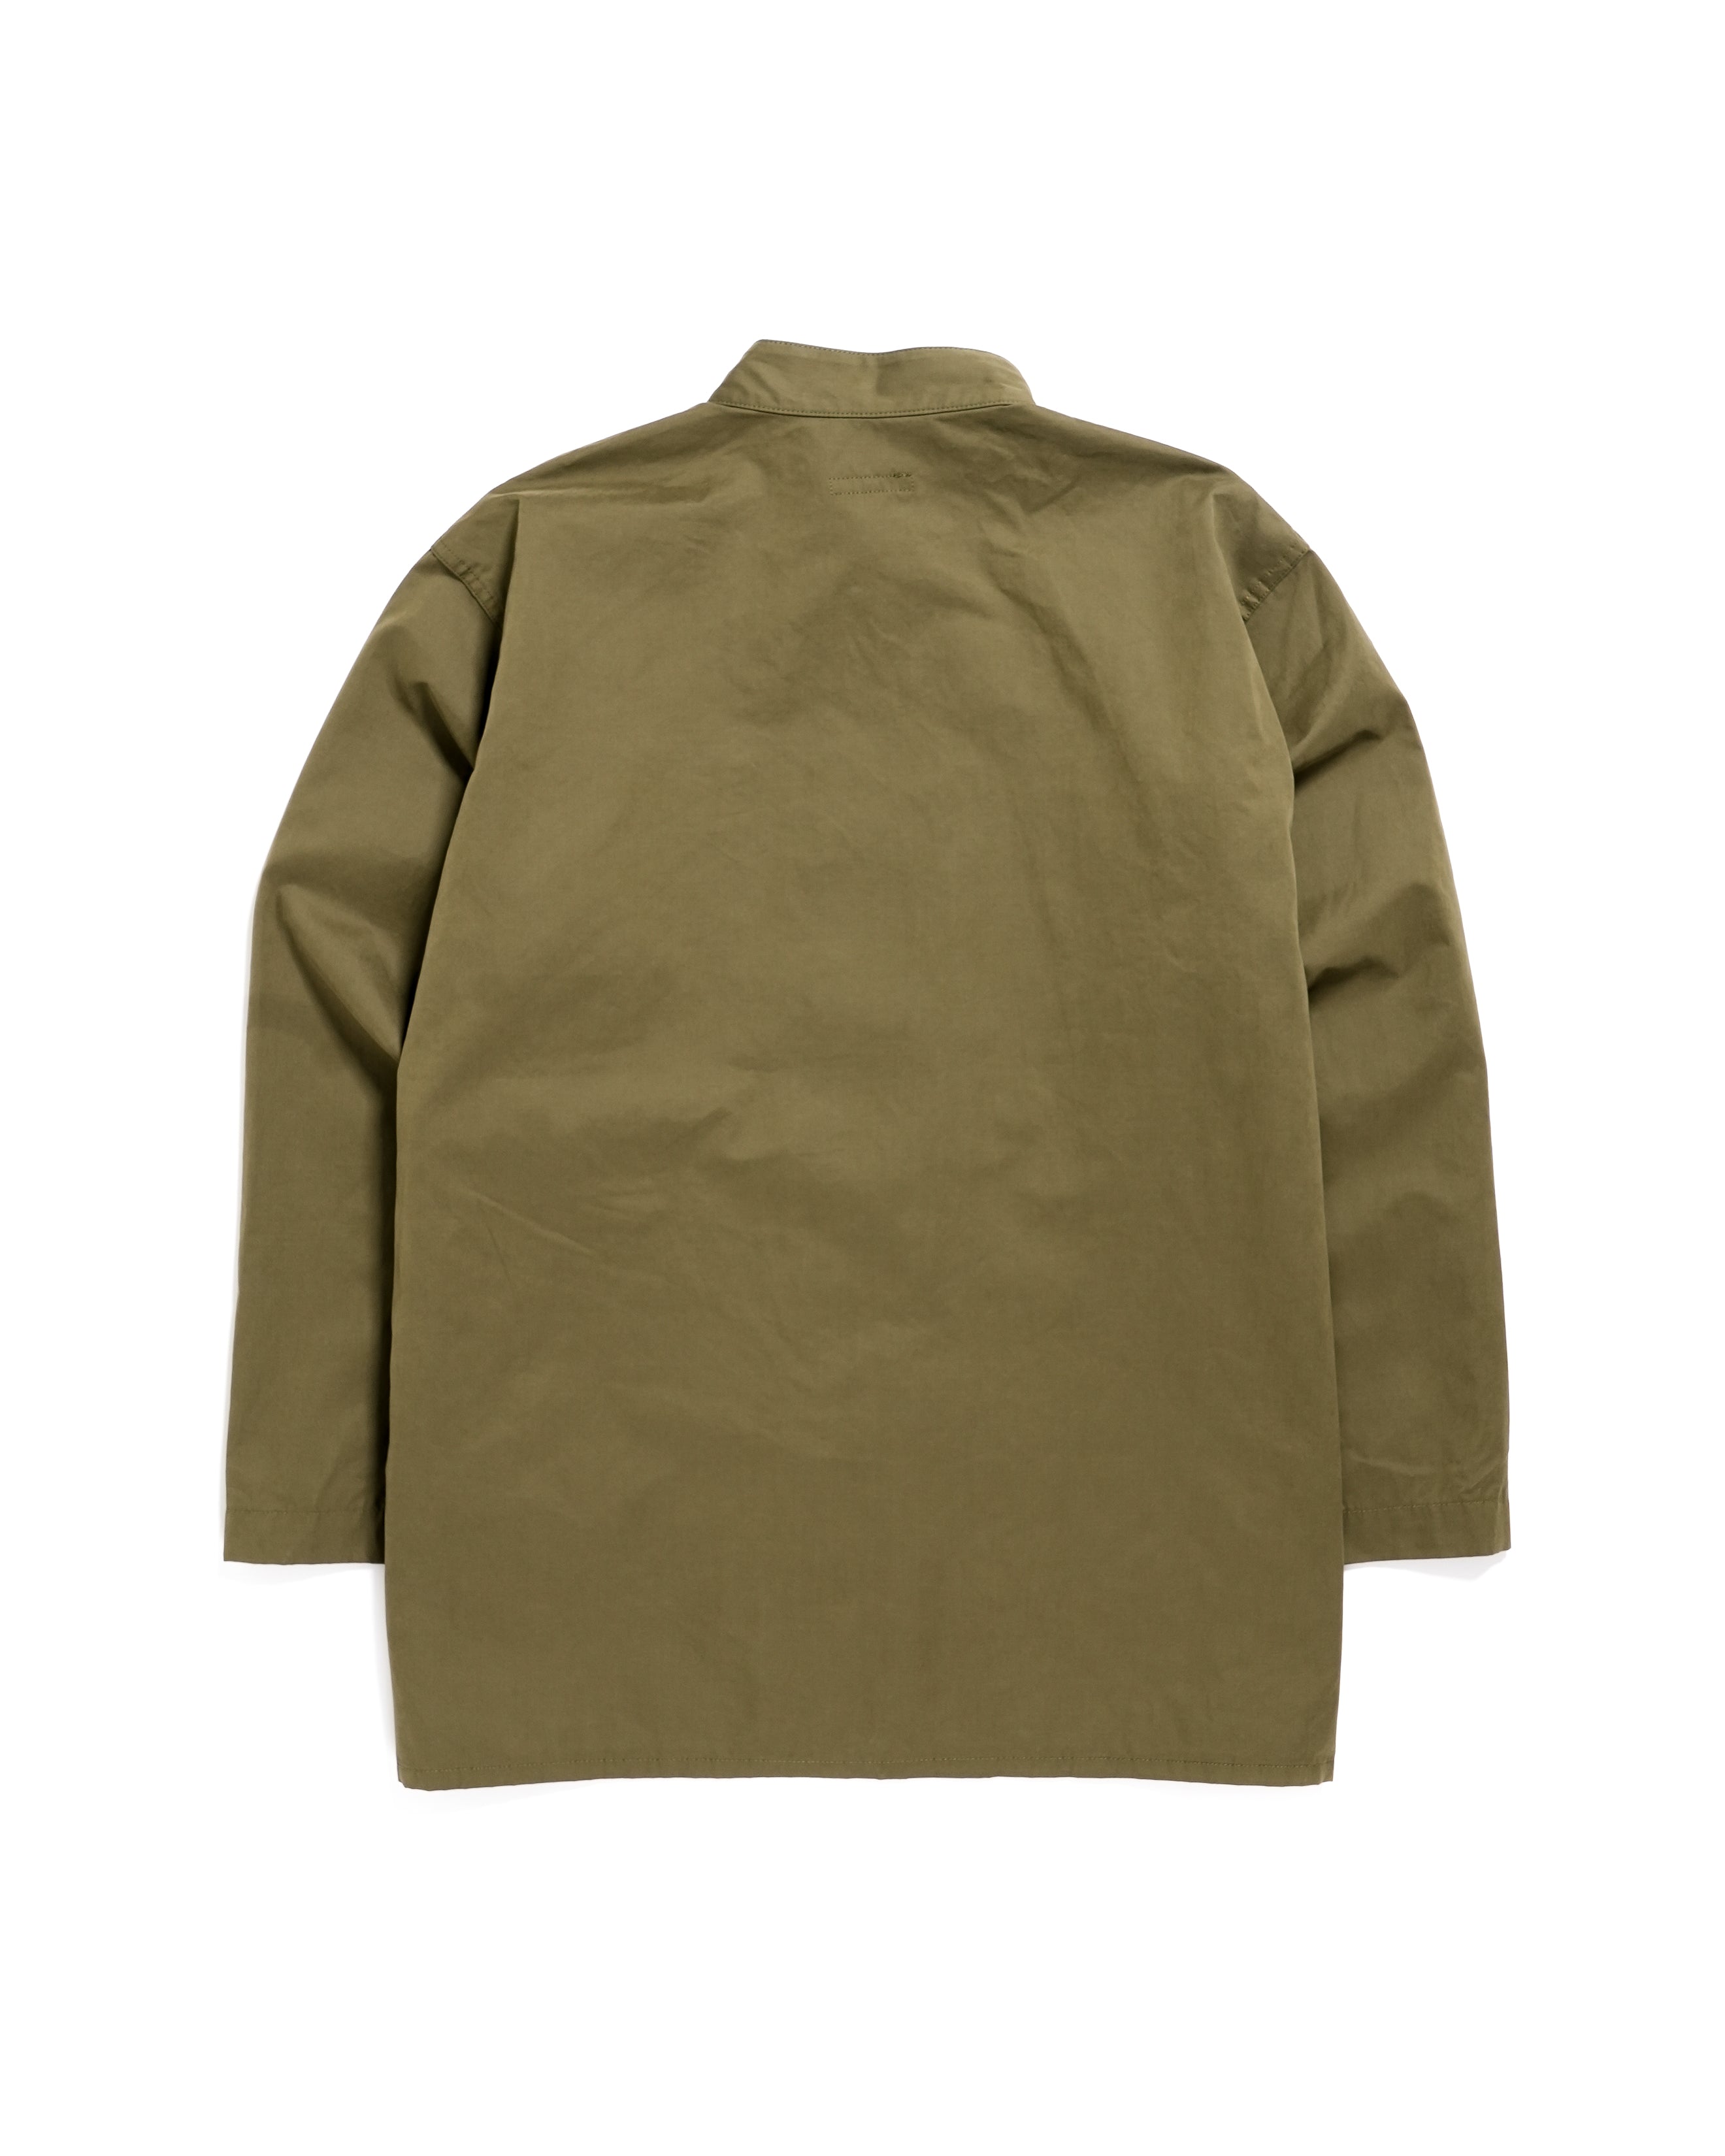 Dayton Shirt - Olive PC Coated Cloth - NNY SP